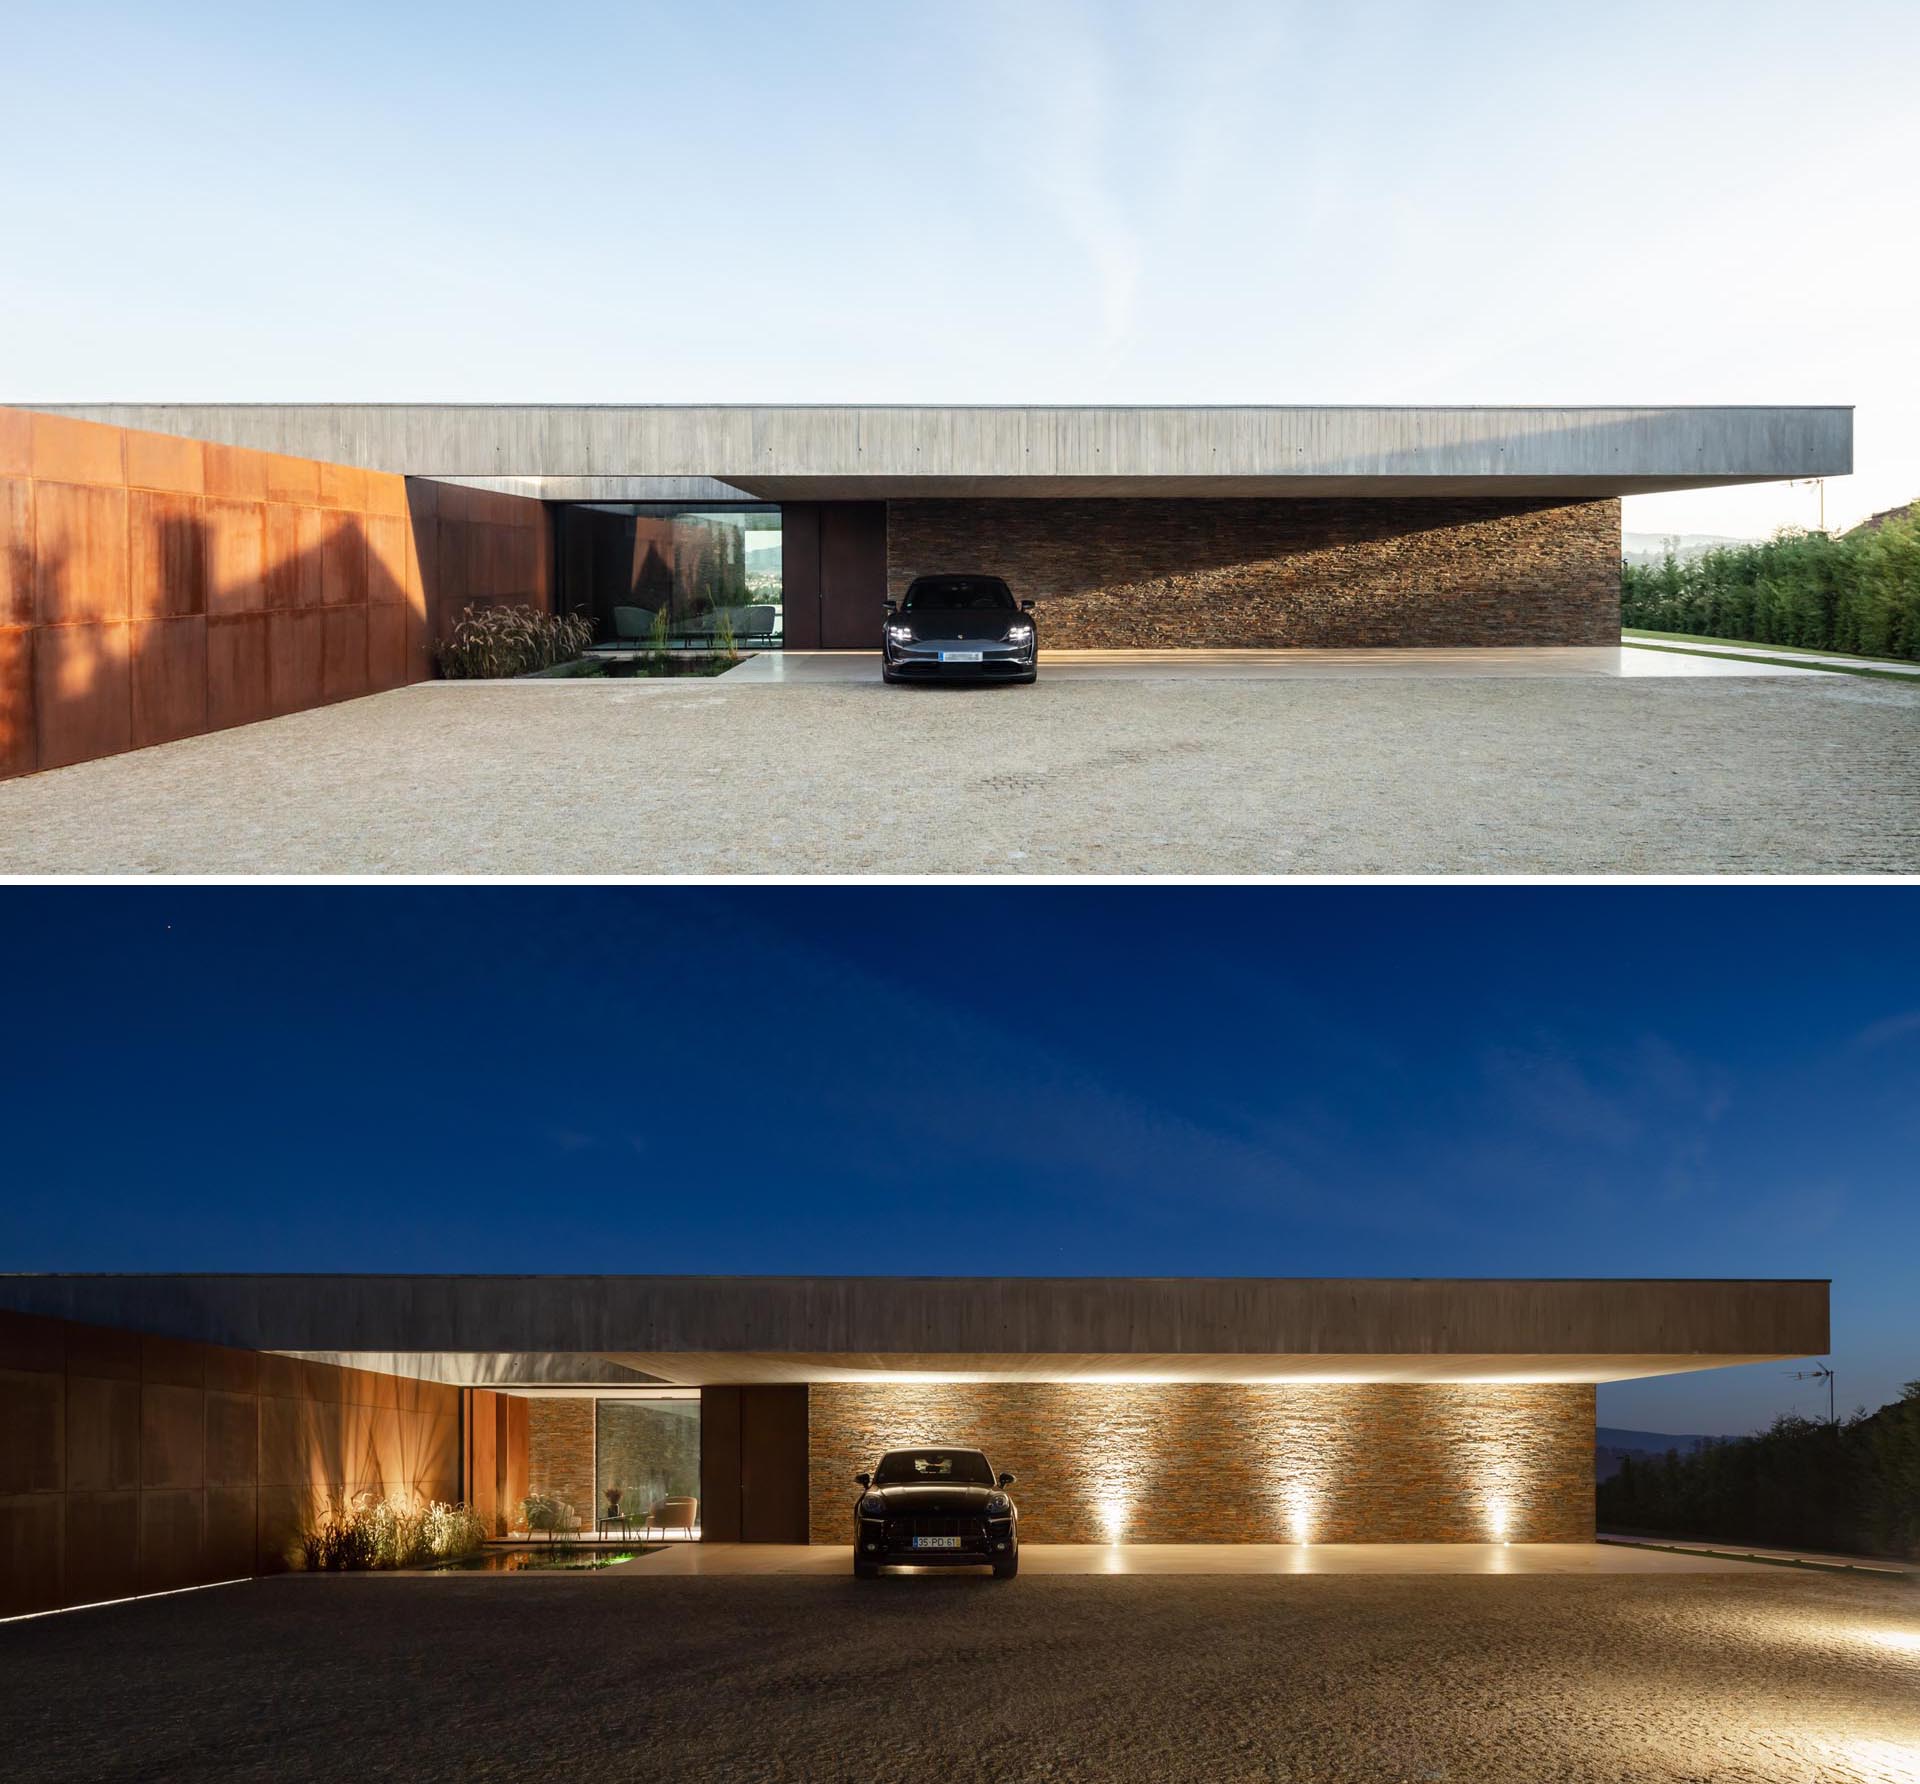 Современный бетонный дом с акцентными стенами из обветренной стали и камня и освещением, выделяющим крытую парковку в ночное время.